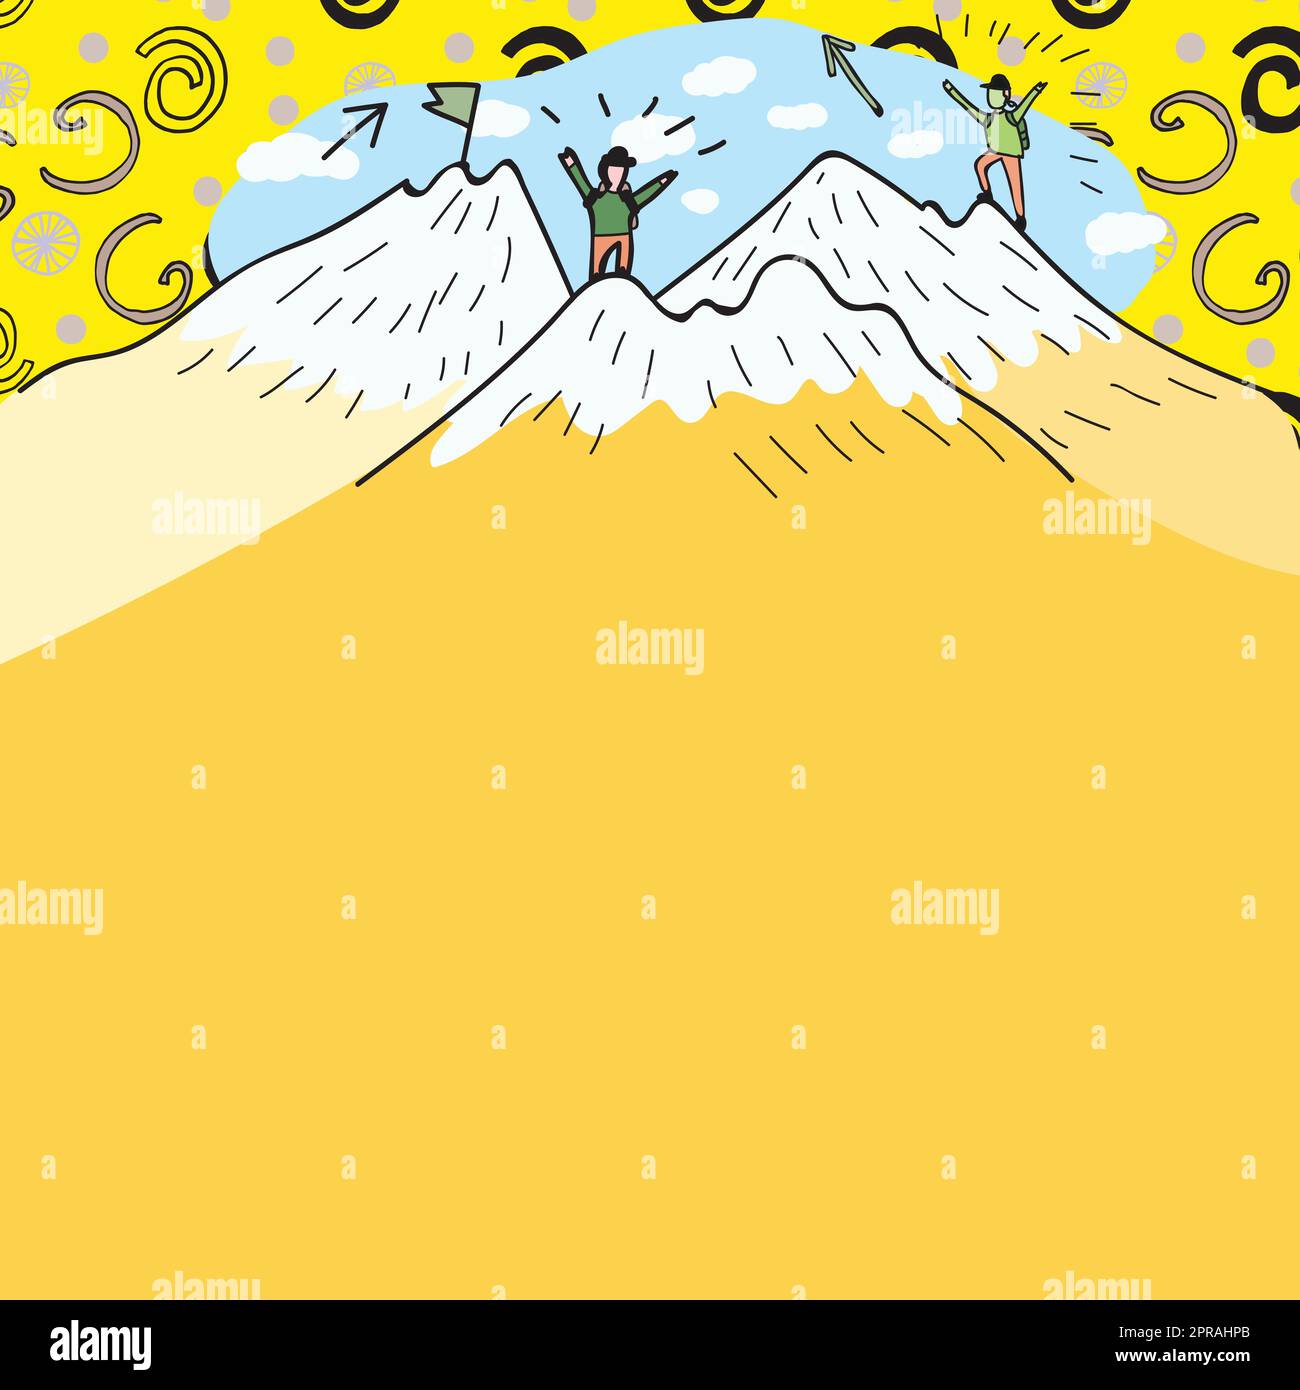 Message présenté sous les hommes randonnée au sommet des montagnes avec neige. Deux randonneurs grimpant sur les falaises pour atteindre Un but. Grimpeurs qui monte avec des nuages en arrière-plan. Illustration de Vecteur